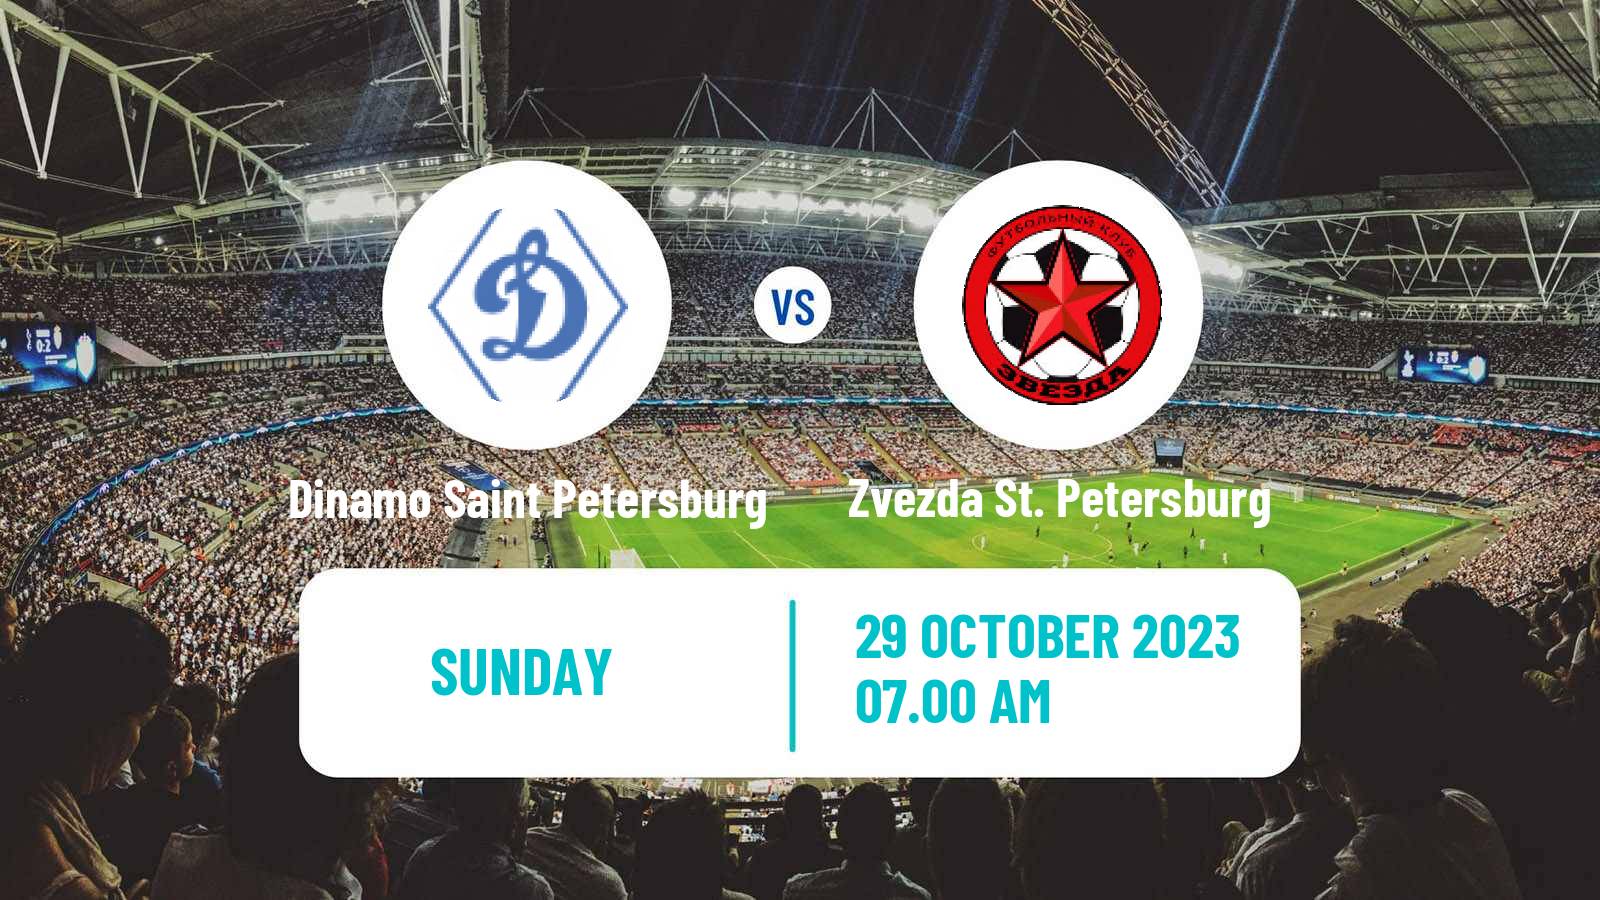 Soccer FNL 2 Division B Group 2 Dinamo Saint Petersburg - Zvezda St. Petersburg